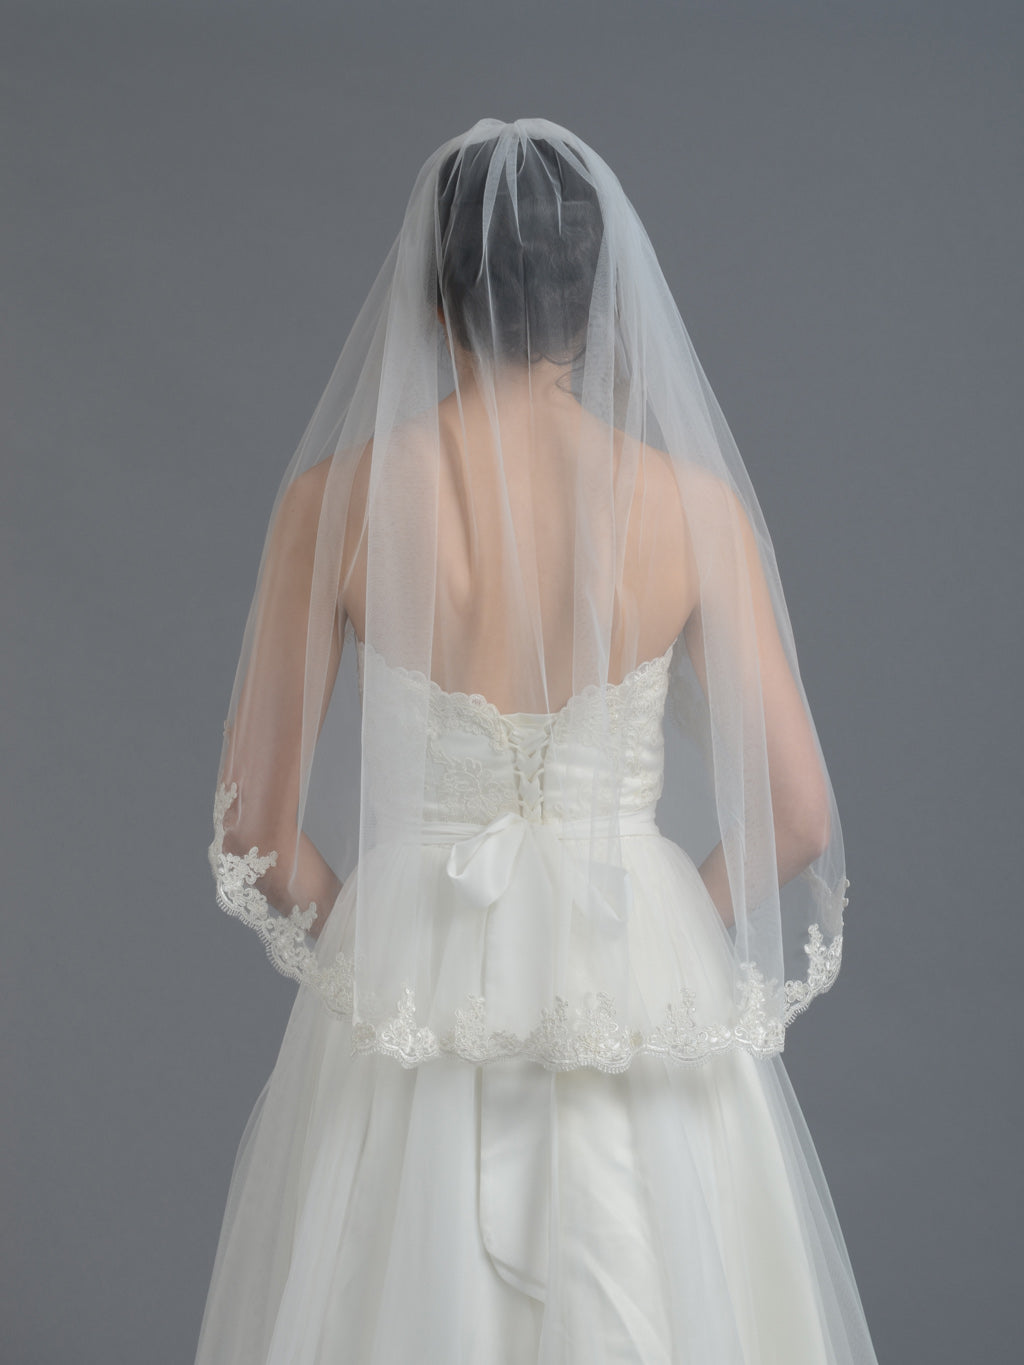 https://www.tulipbridal.com/cdn/shop/products/wedding-veil-036-back.jpg?v=1691383897&width=1445